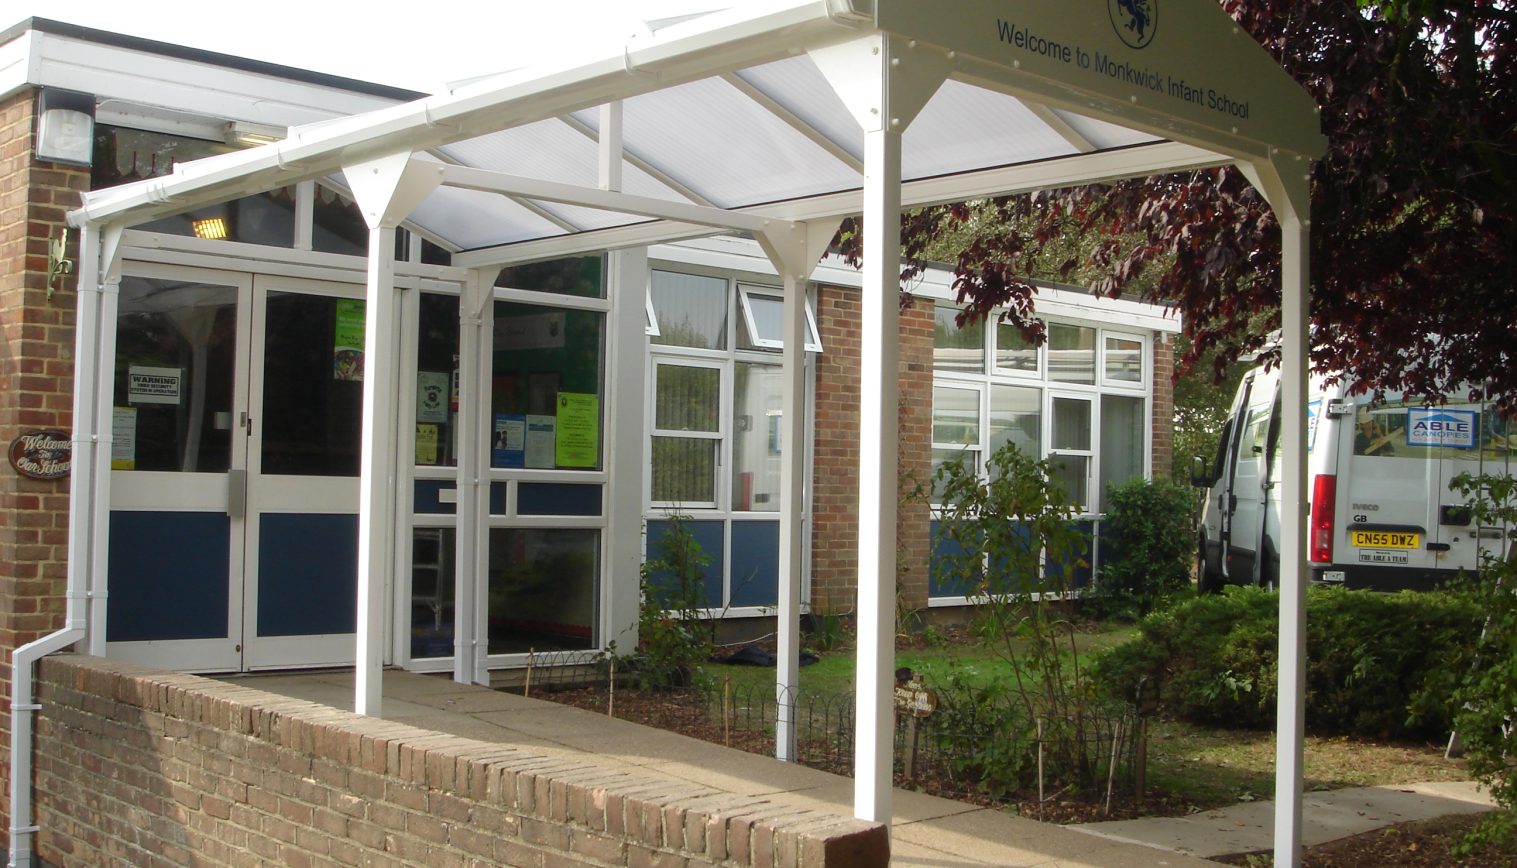 Monkwick Infant & Nursery School – Entrance Canopy